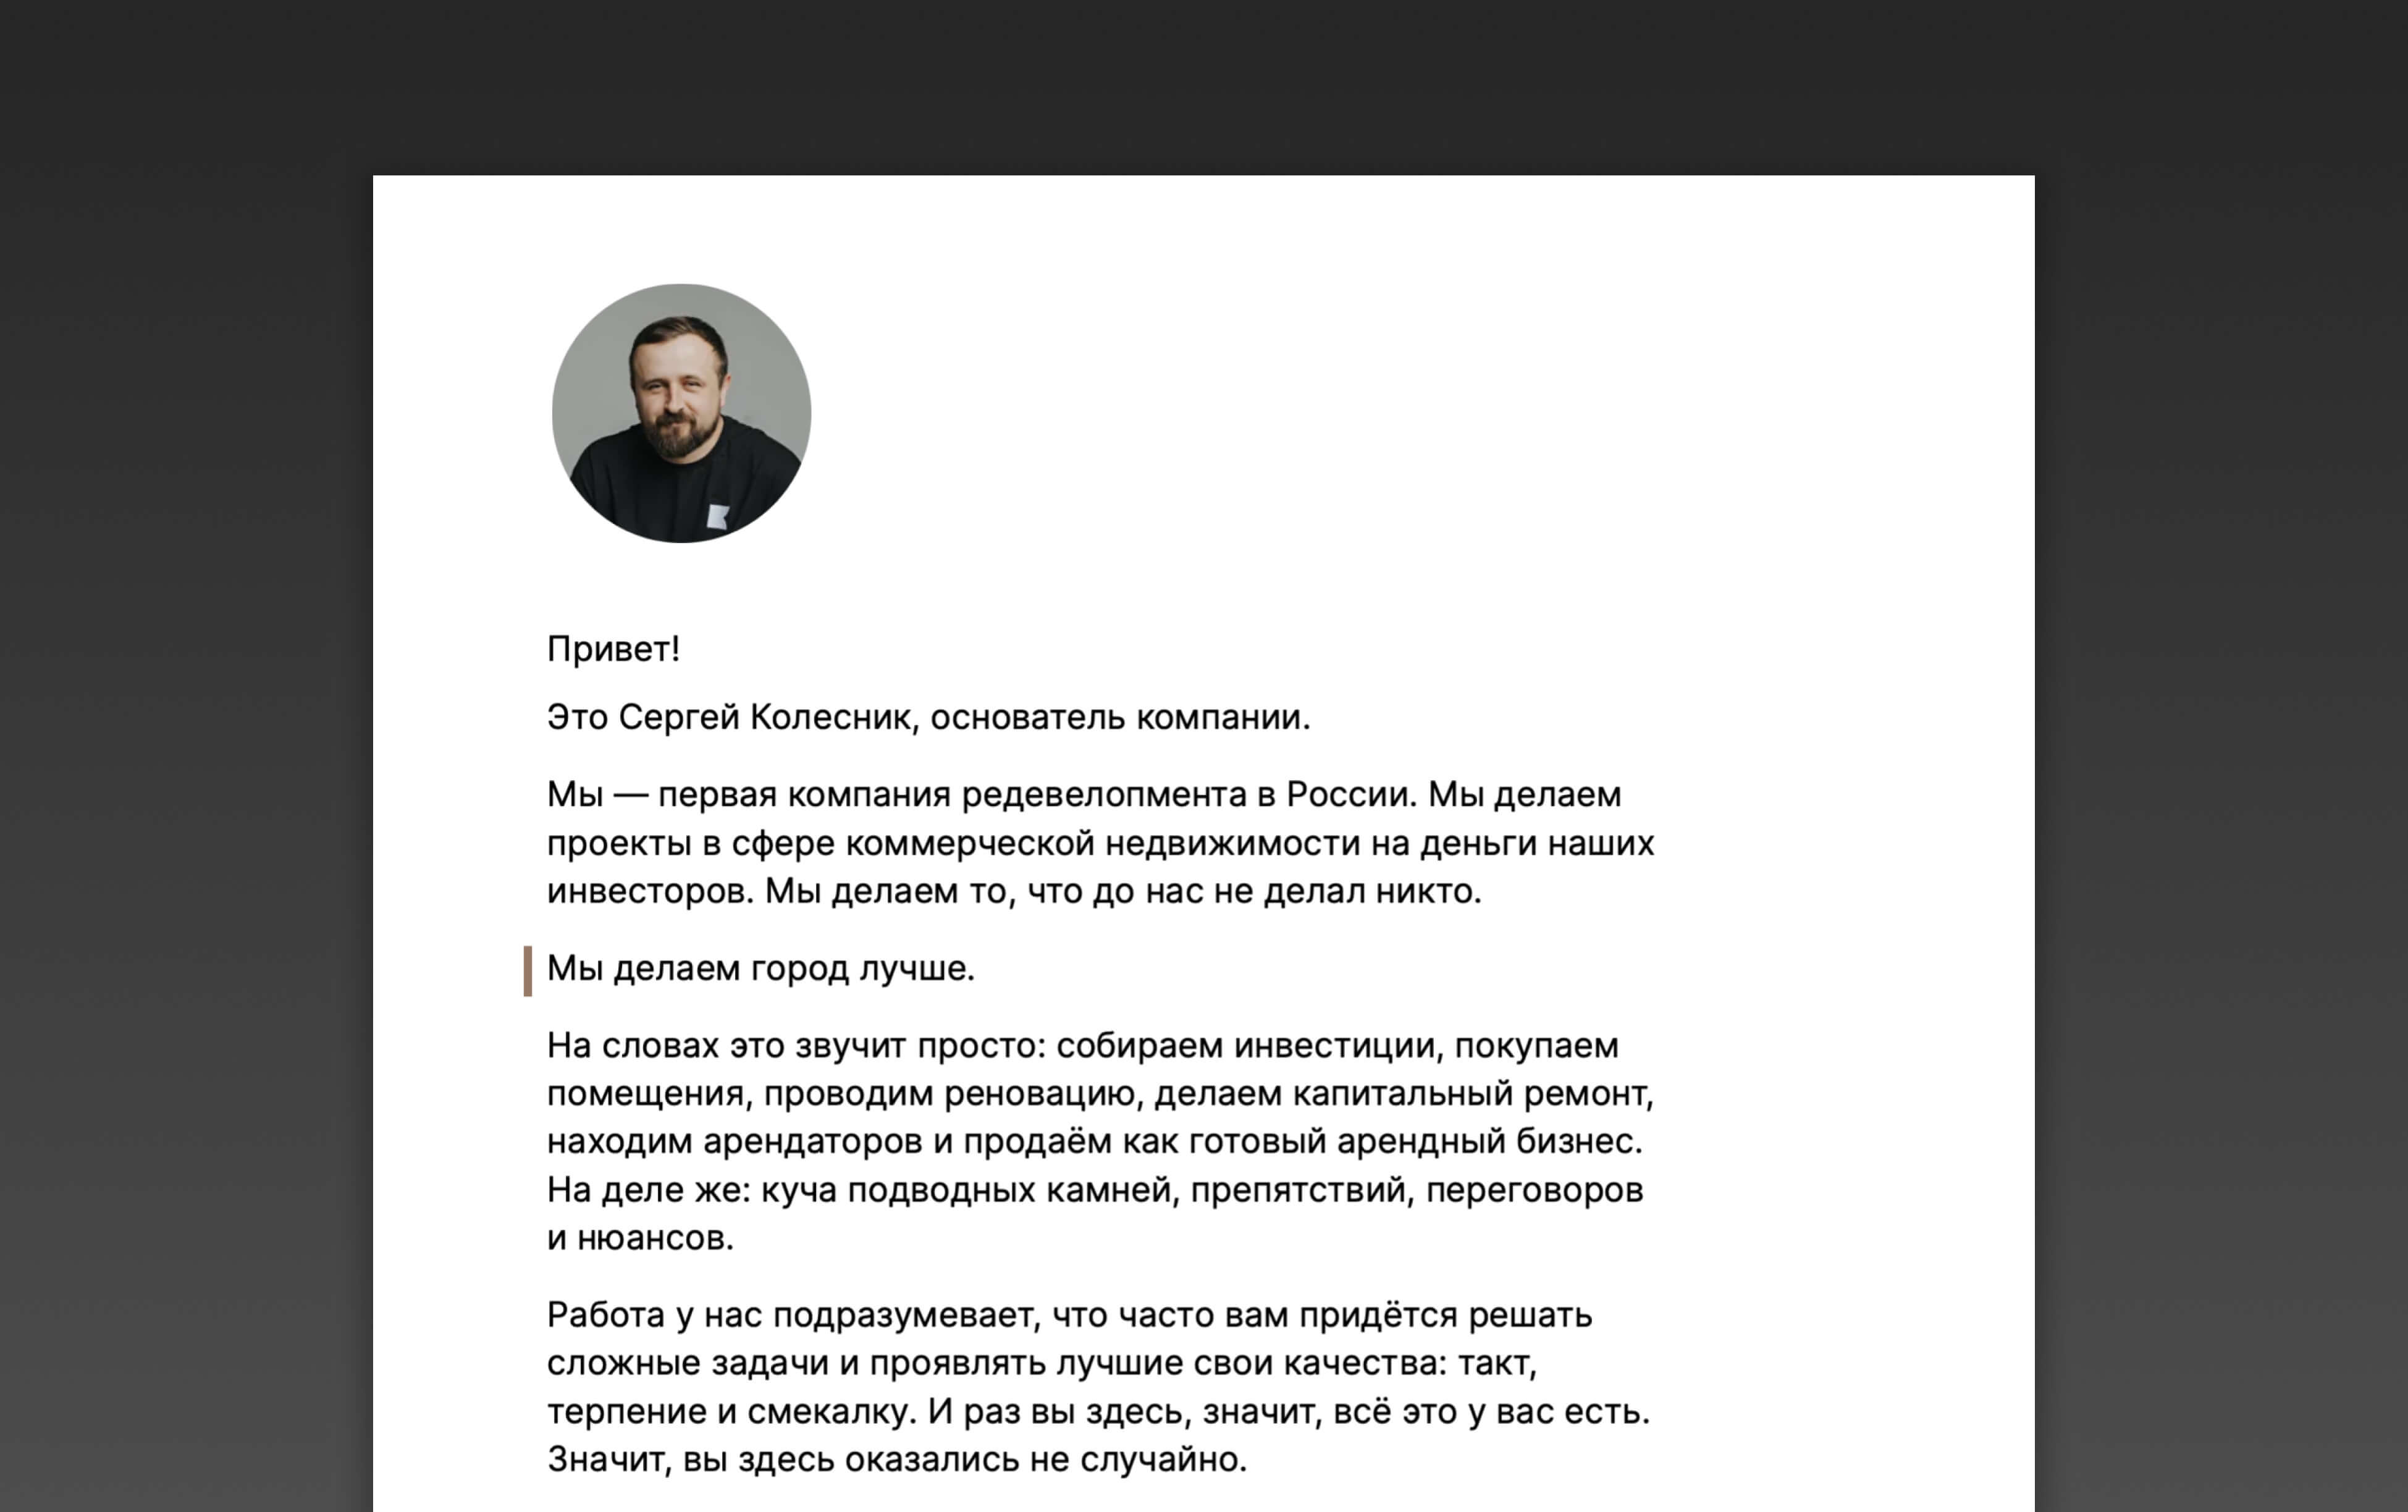 Приветствие от основателя компании Сергея Колесника